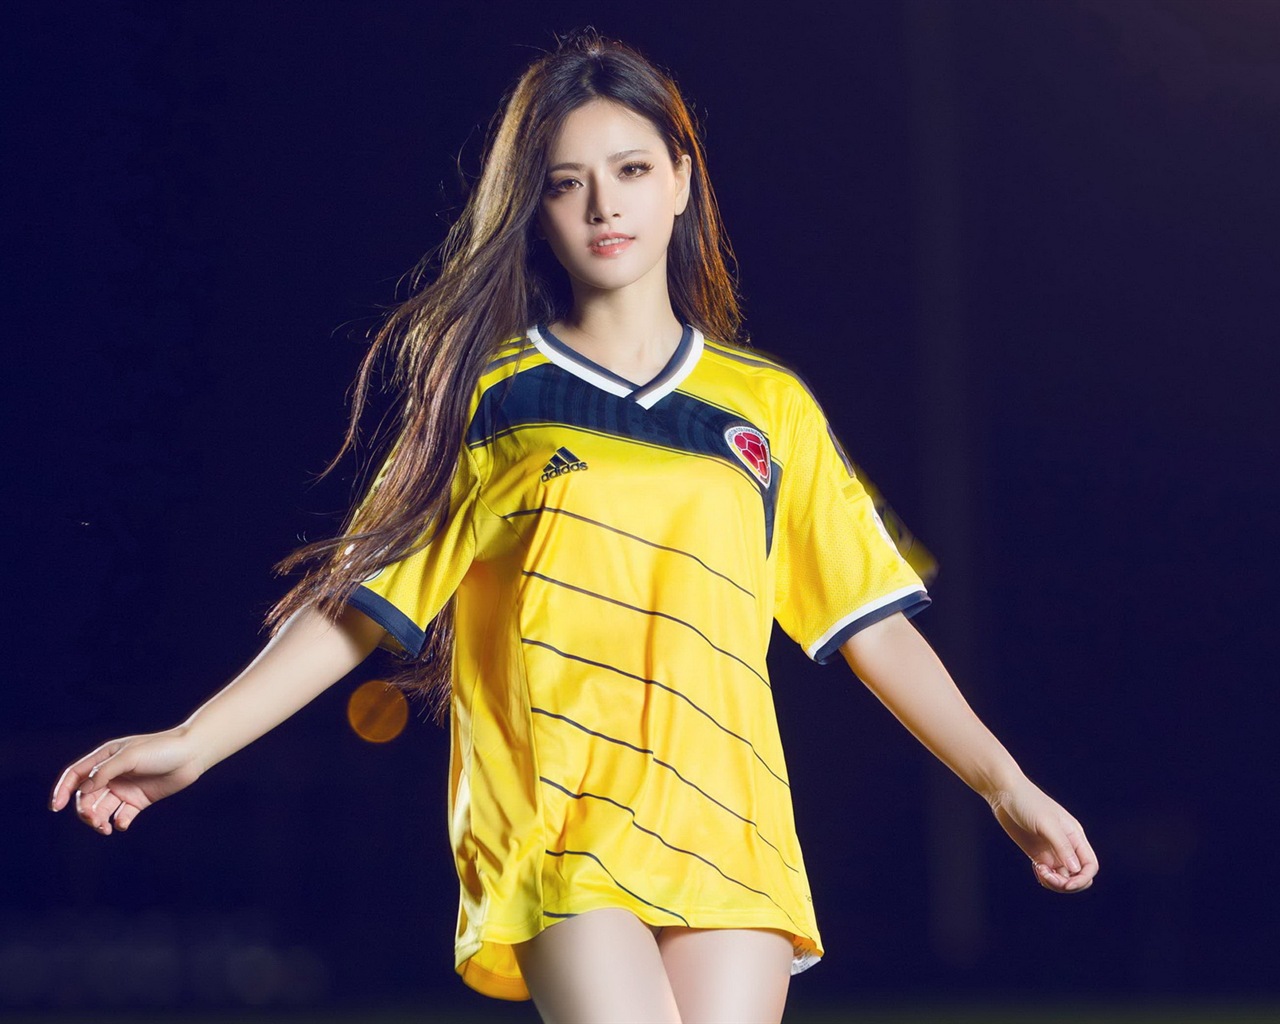 32 camisetas de la Copa del Mundo de fútbol, bebé wallpapers hermosas chicas HD #29 - 1280x1024